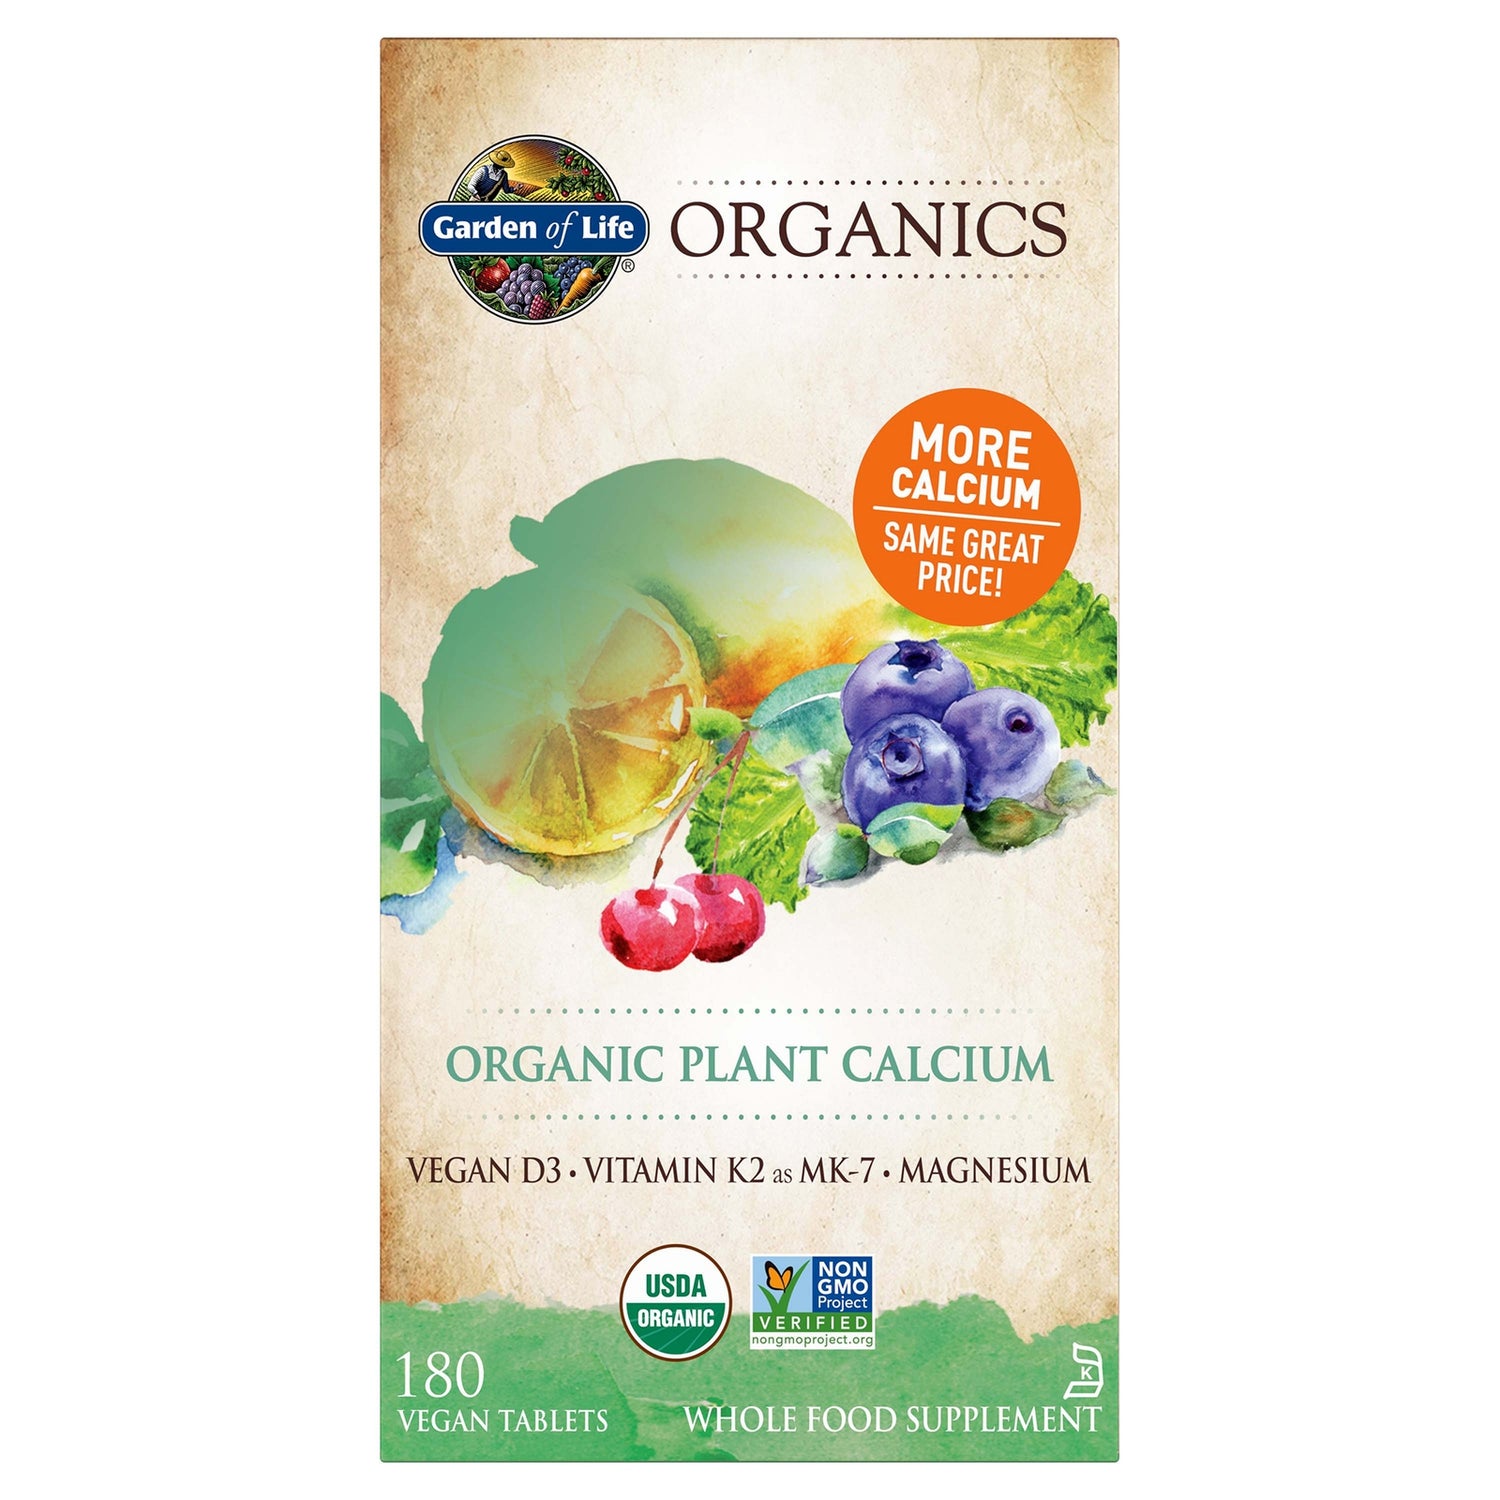 Comprimidos de calcio vegetal Organics - 180 comprimidos